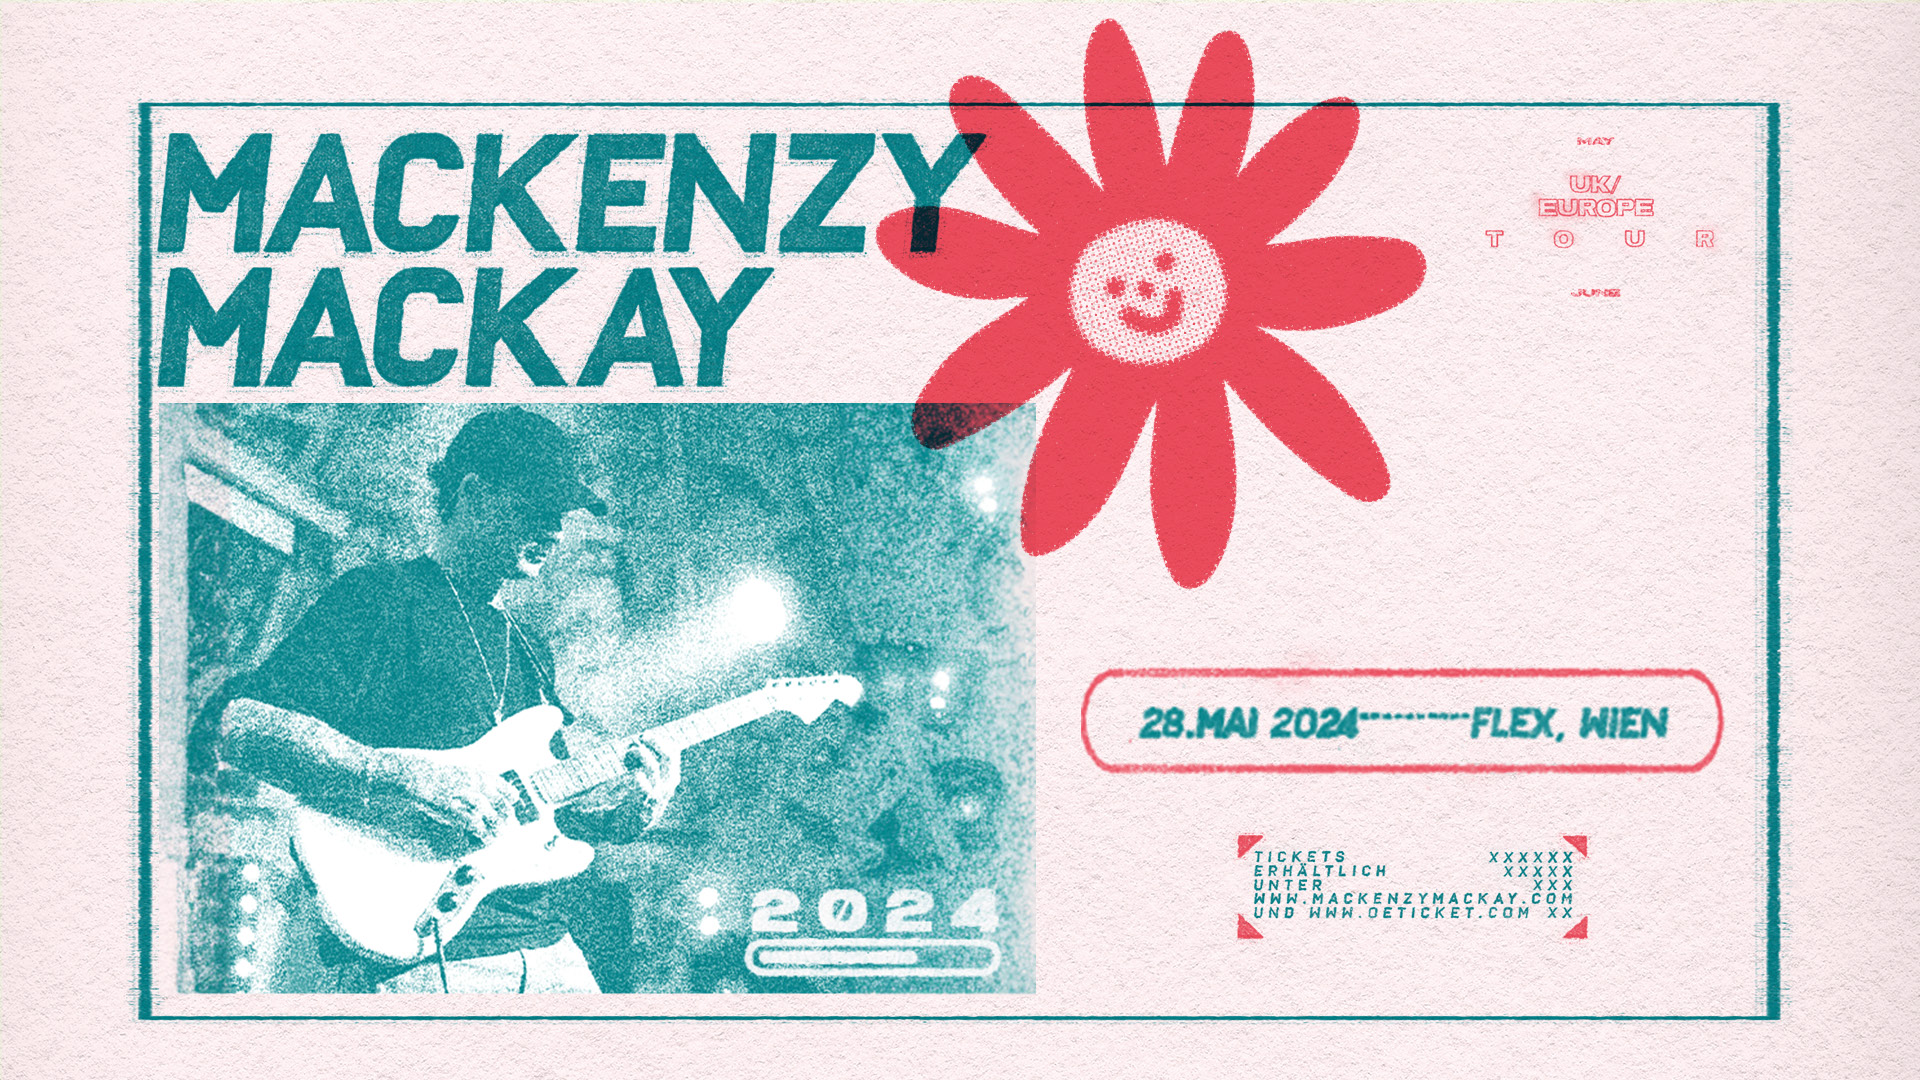 Mackenzy Mackay am 28. May 2024 @ Flex.